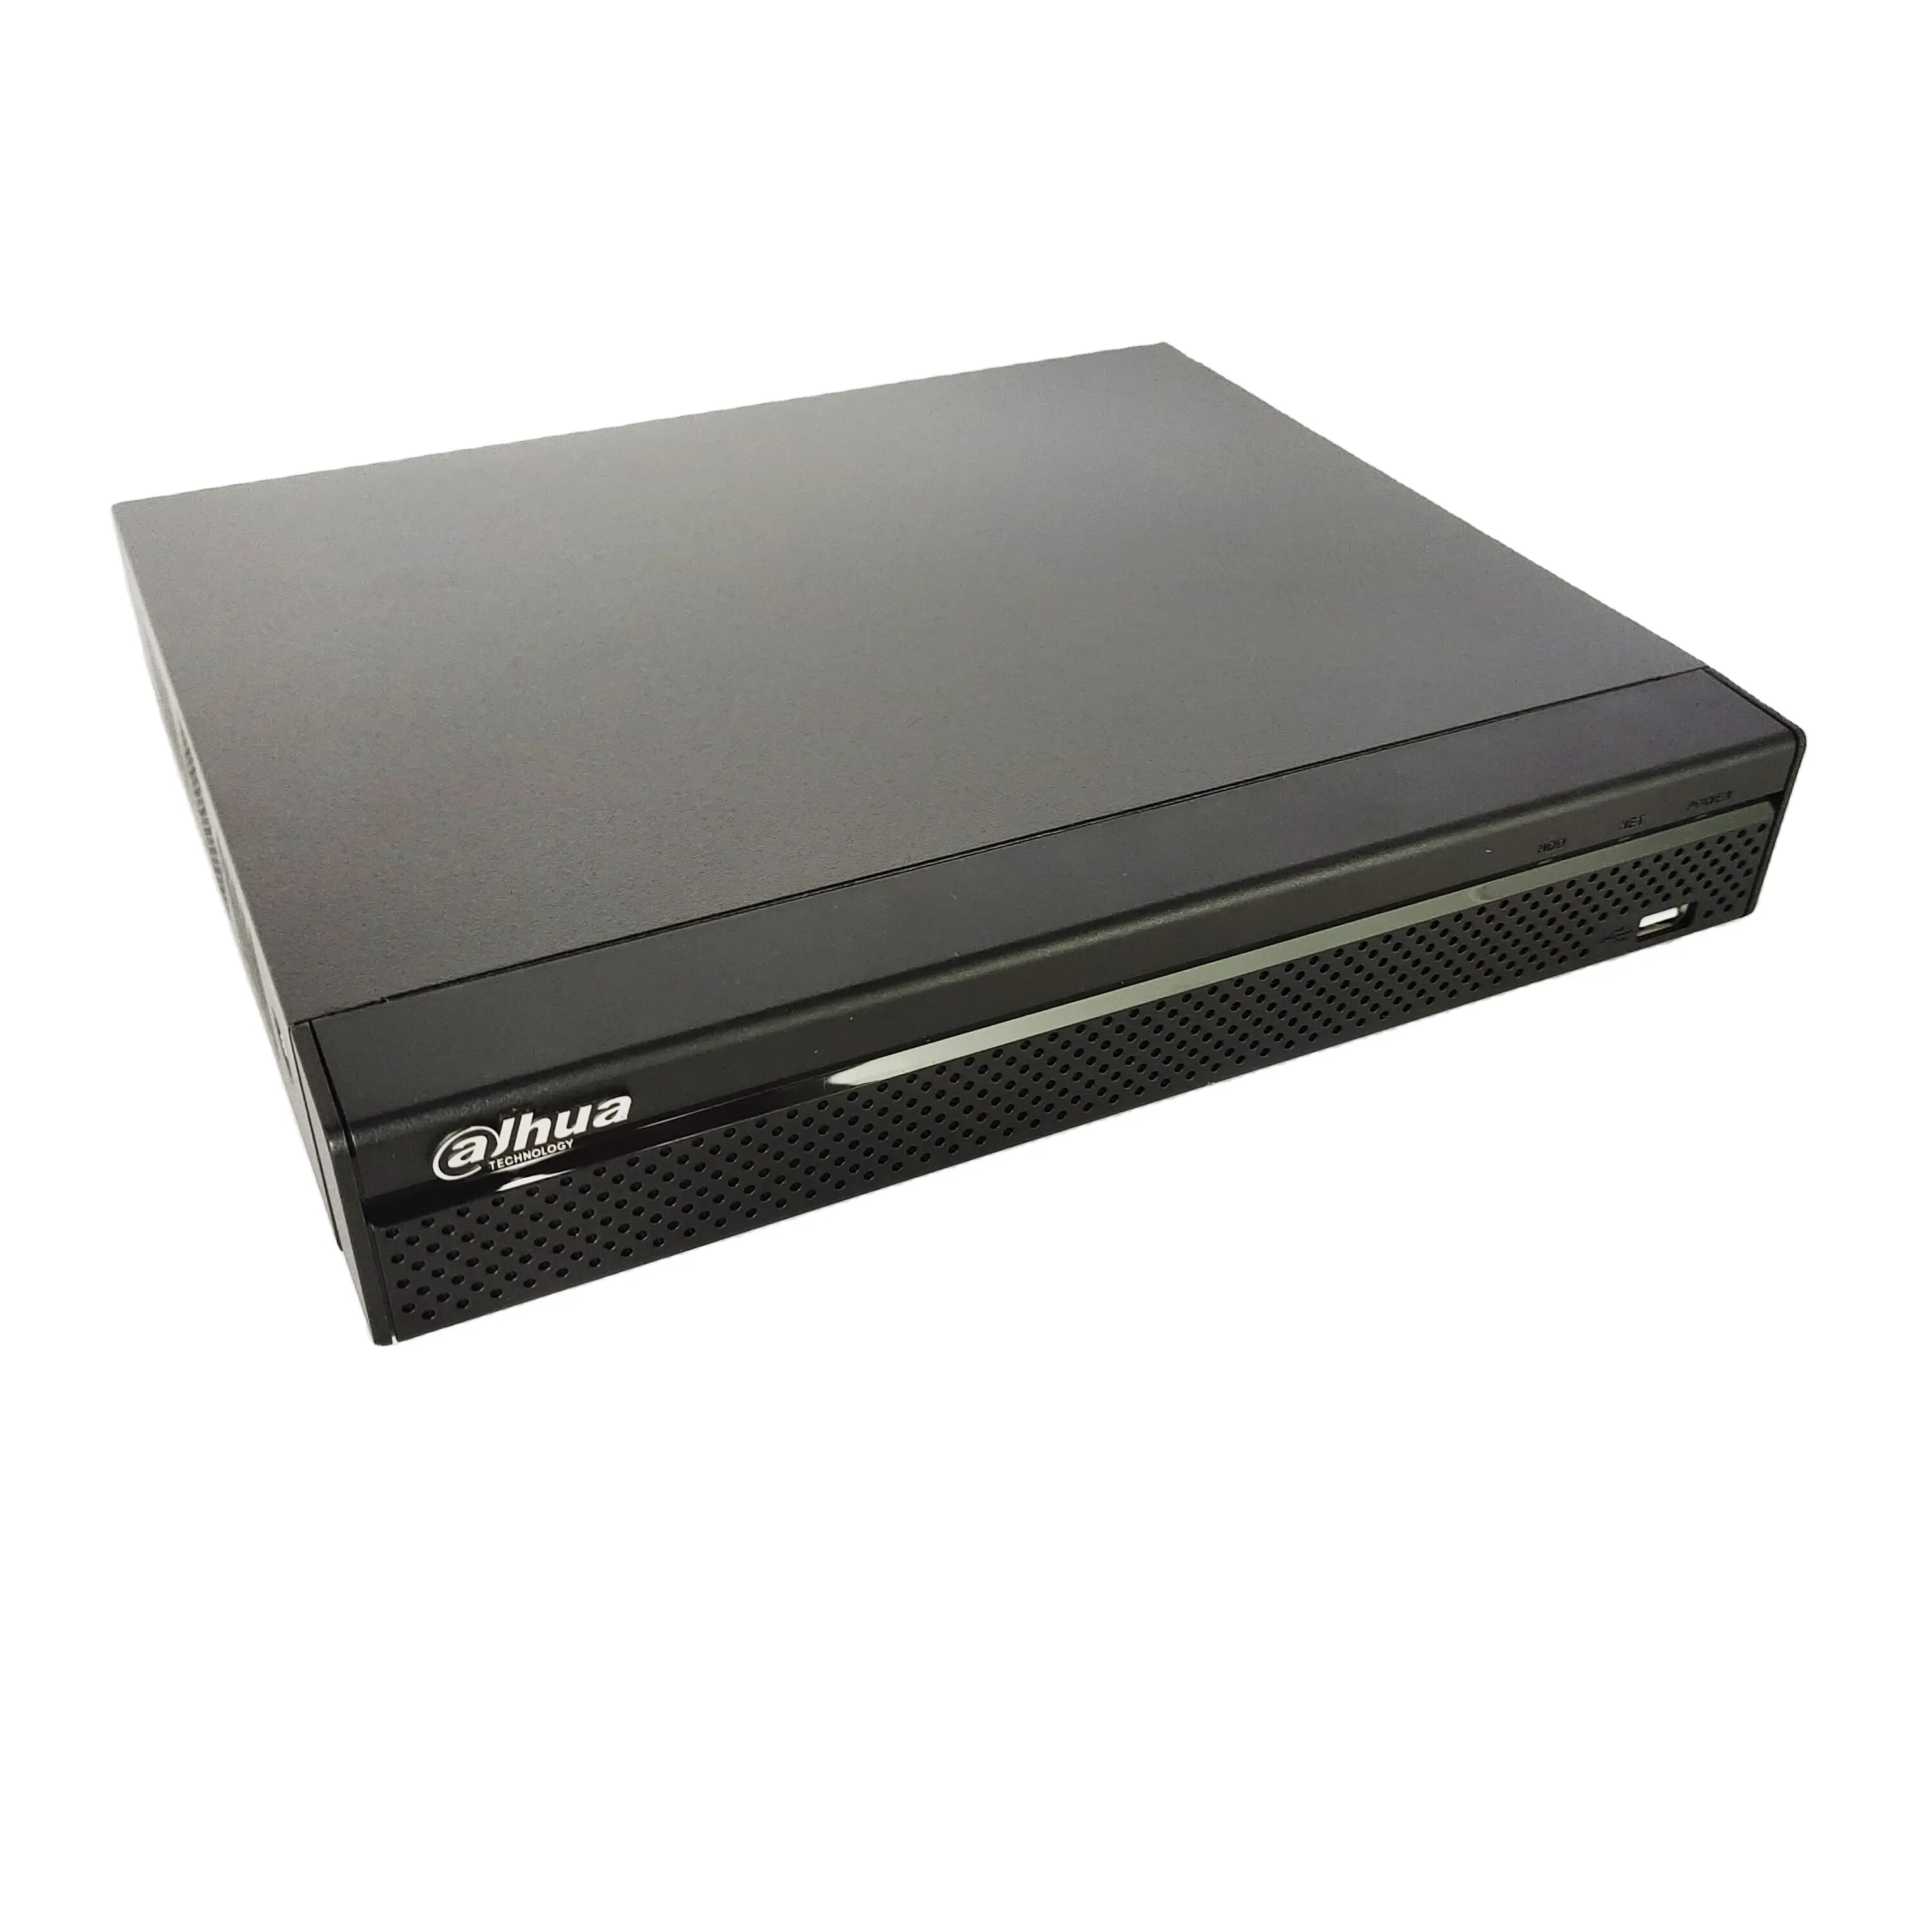 Dahua 4K Nvr NVR4108HS-P-4KS2/L 8 Kanaals Compact 1U 1HDD 4PoE Netwerk Video Recorder Dahua Poe Nvr